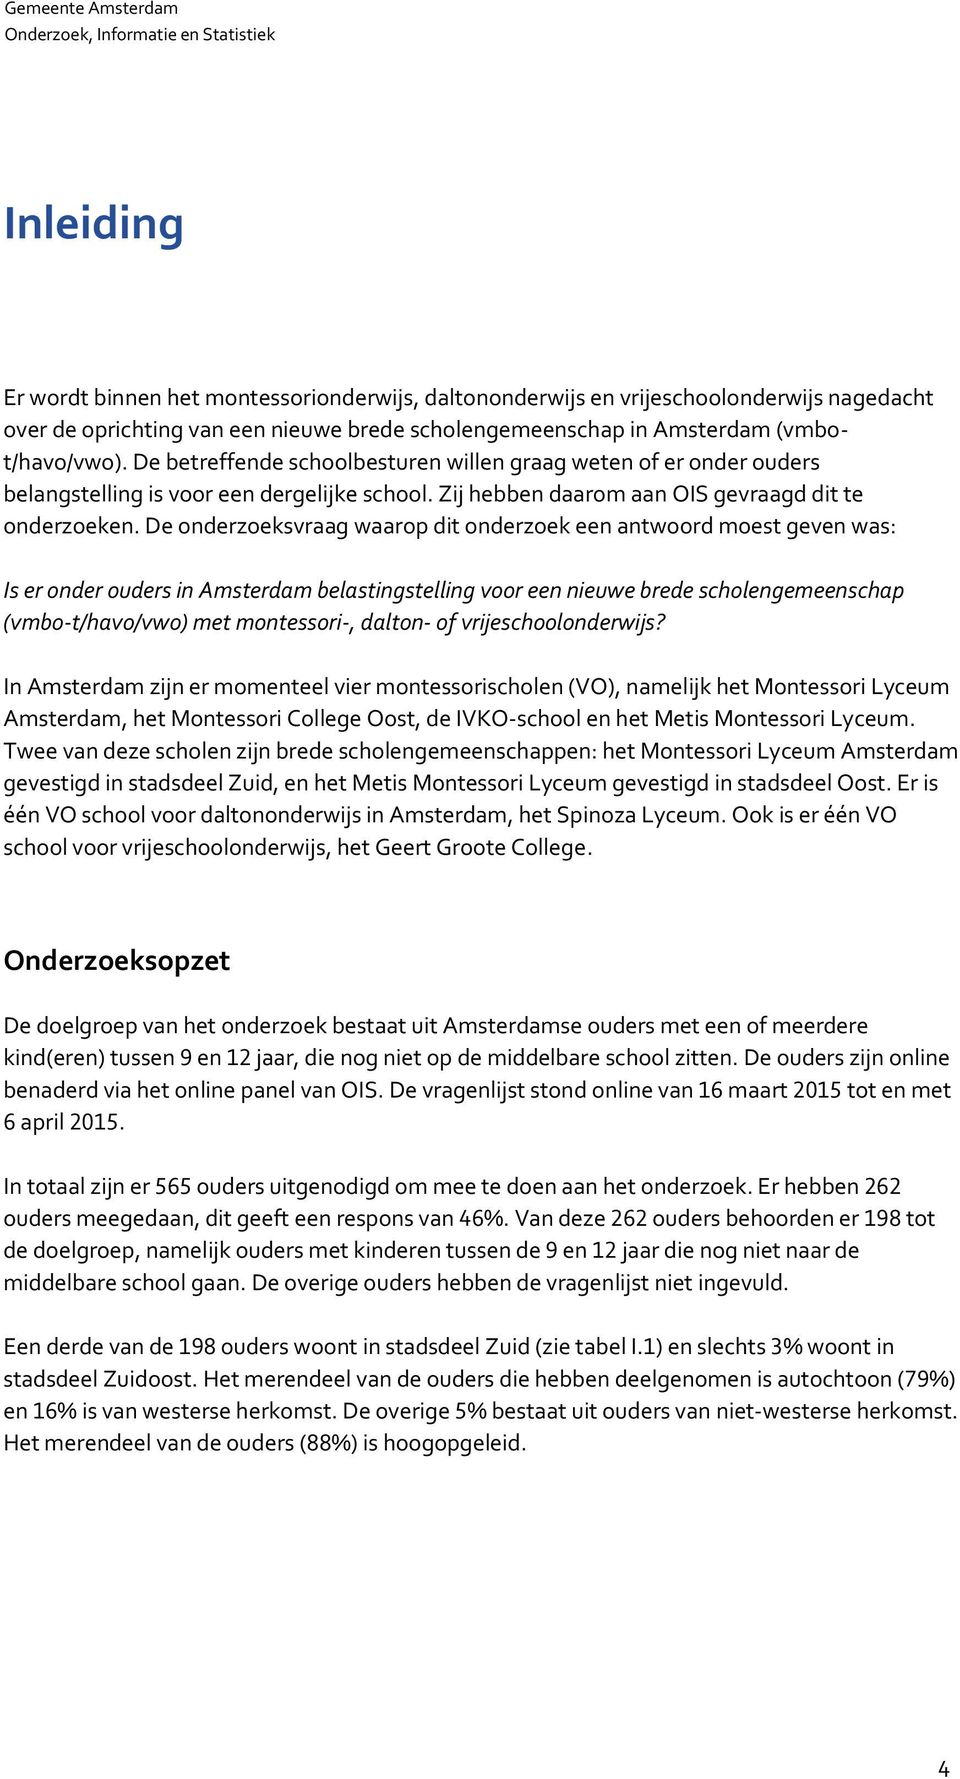 De onderzoeksvraag waarop dit onderzoek een antwoord moest geven was: Is er onder ouders in Amsterdam belastingstelling voor een nieuwe brede scholengemeenschap (vmbo-t/havo/vwo) met montessori-,